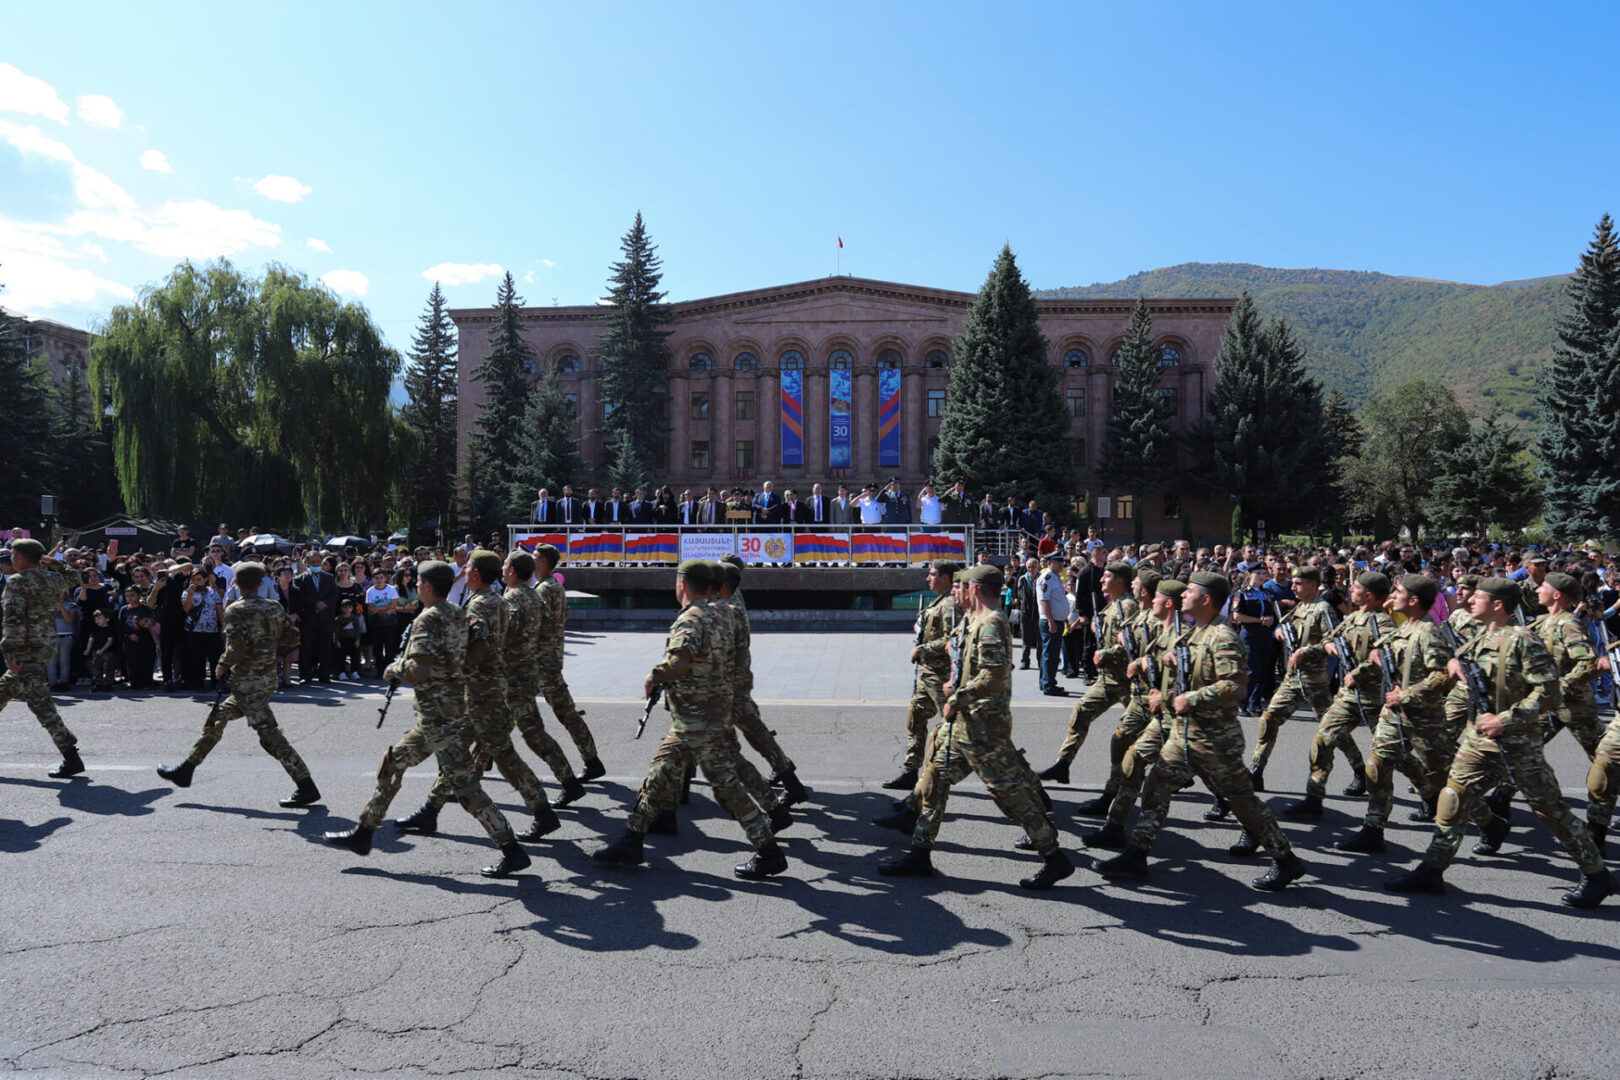 Հայաստանի Հանրապետության անկախության 30-ամյակի զորահանդեսը՝ Վանաձորի Հայքի հրապարակում